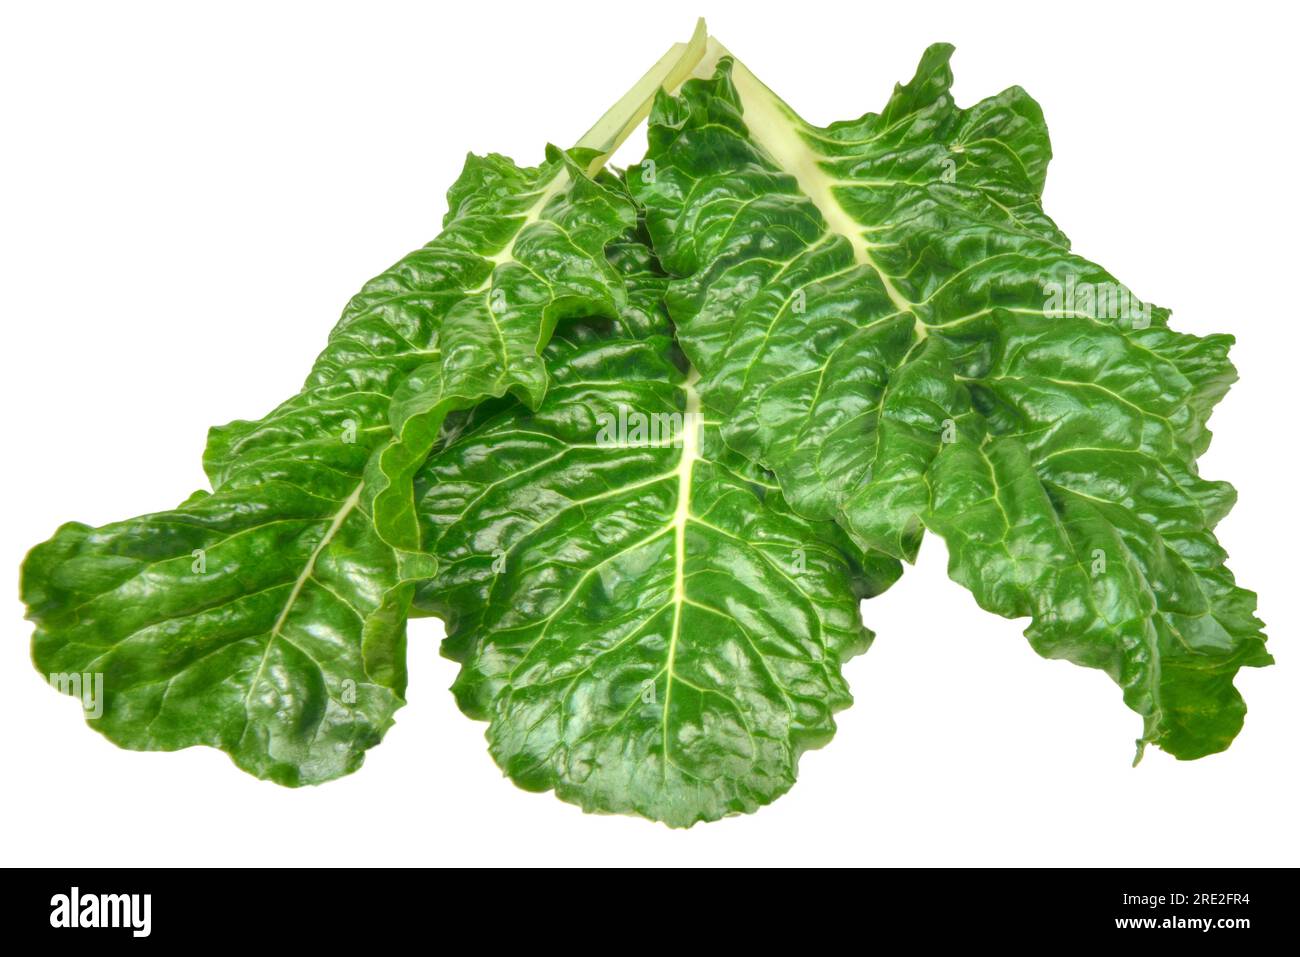 Bette suisse (Beta vulgaris) feuilles de légumes verts feuillus sur fond blanc. Banque D'Images